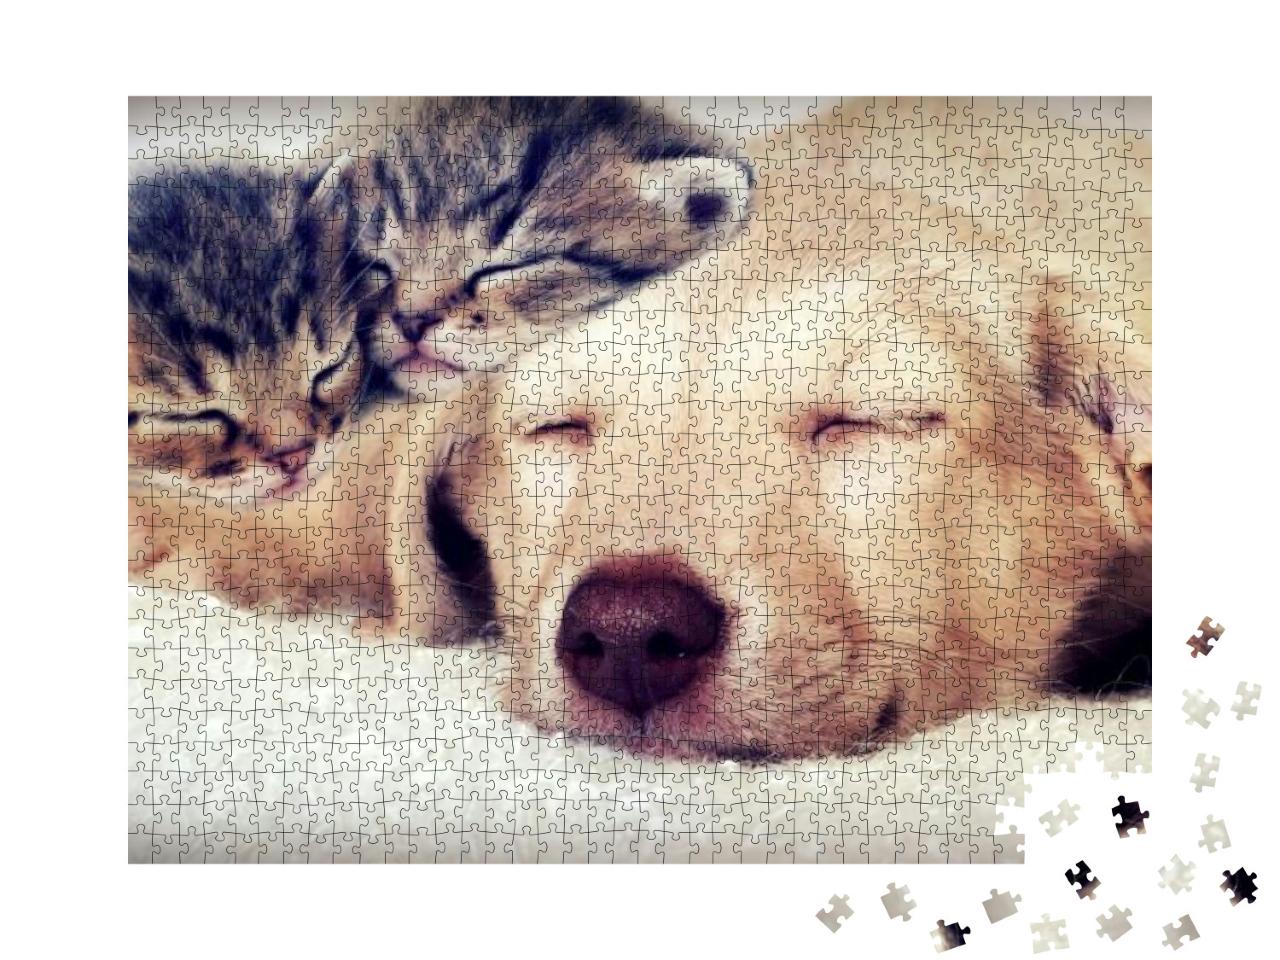 Puzzle 1000 Teile „Welpe und Kätzchen schlafen“